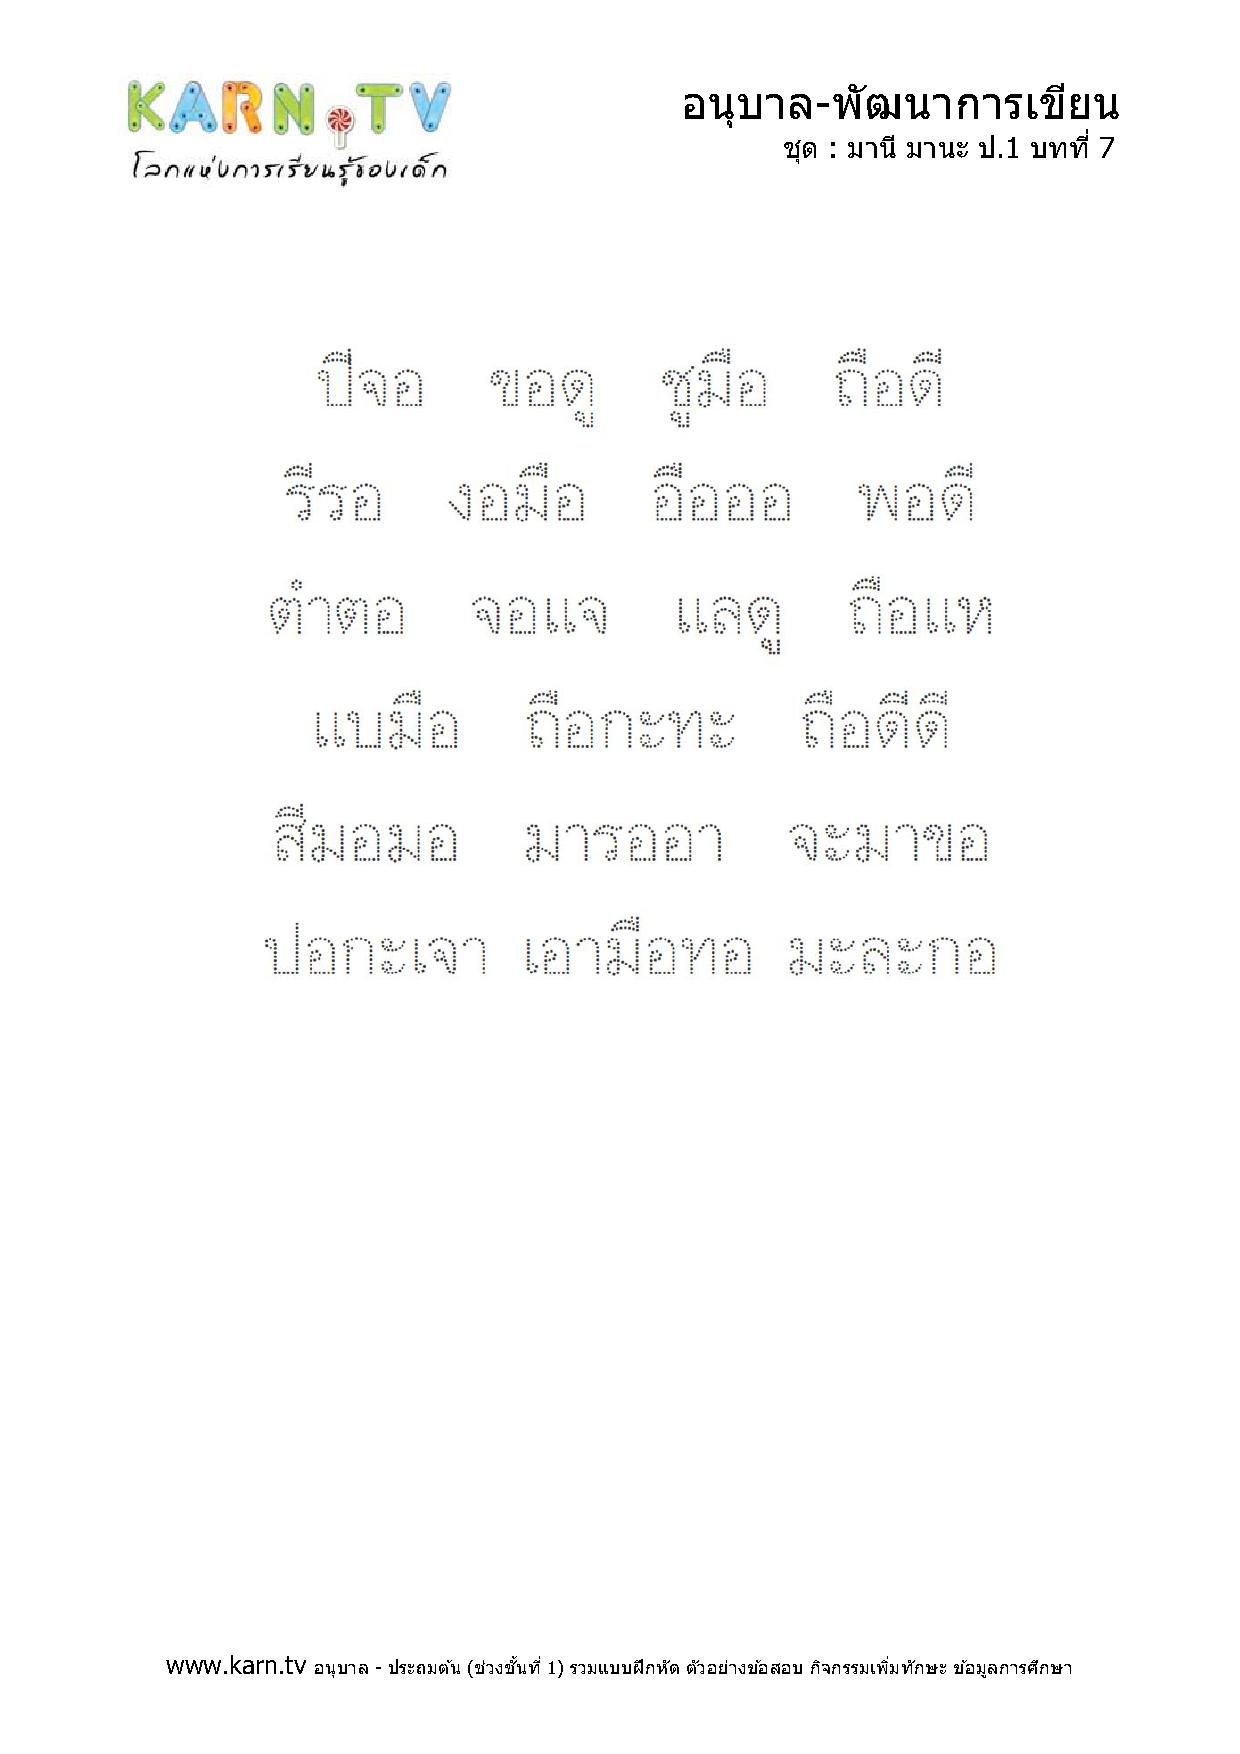 หัดเขียนภาษาไทย มานีมานะ บทที่ 7 หน้า 2